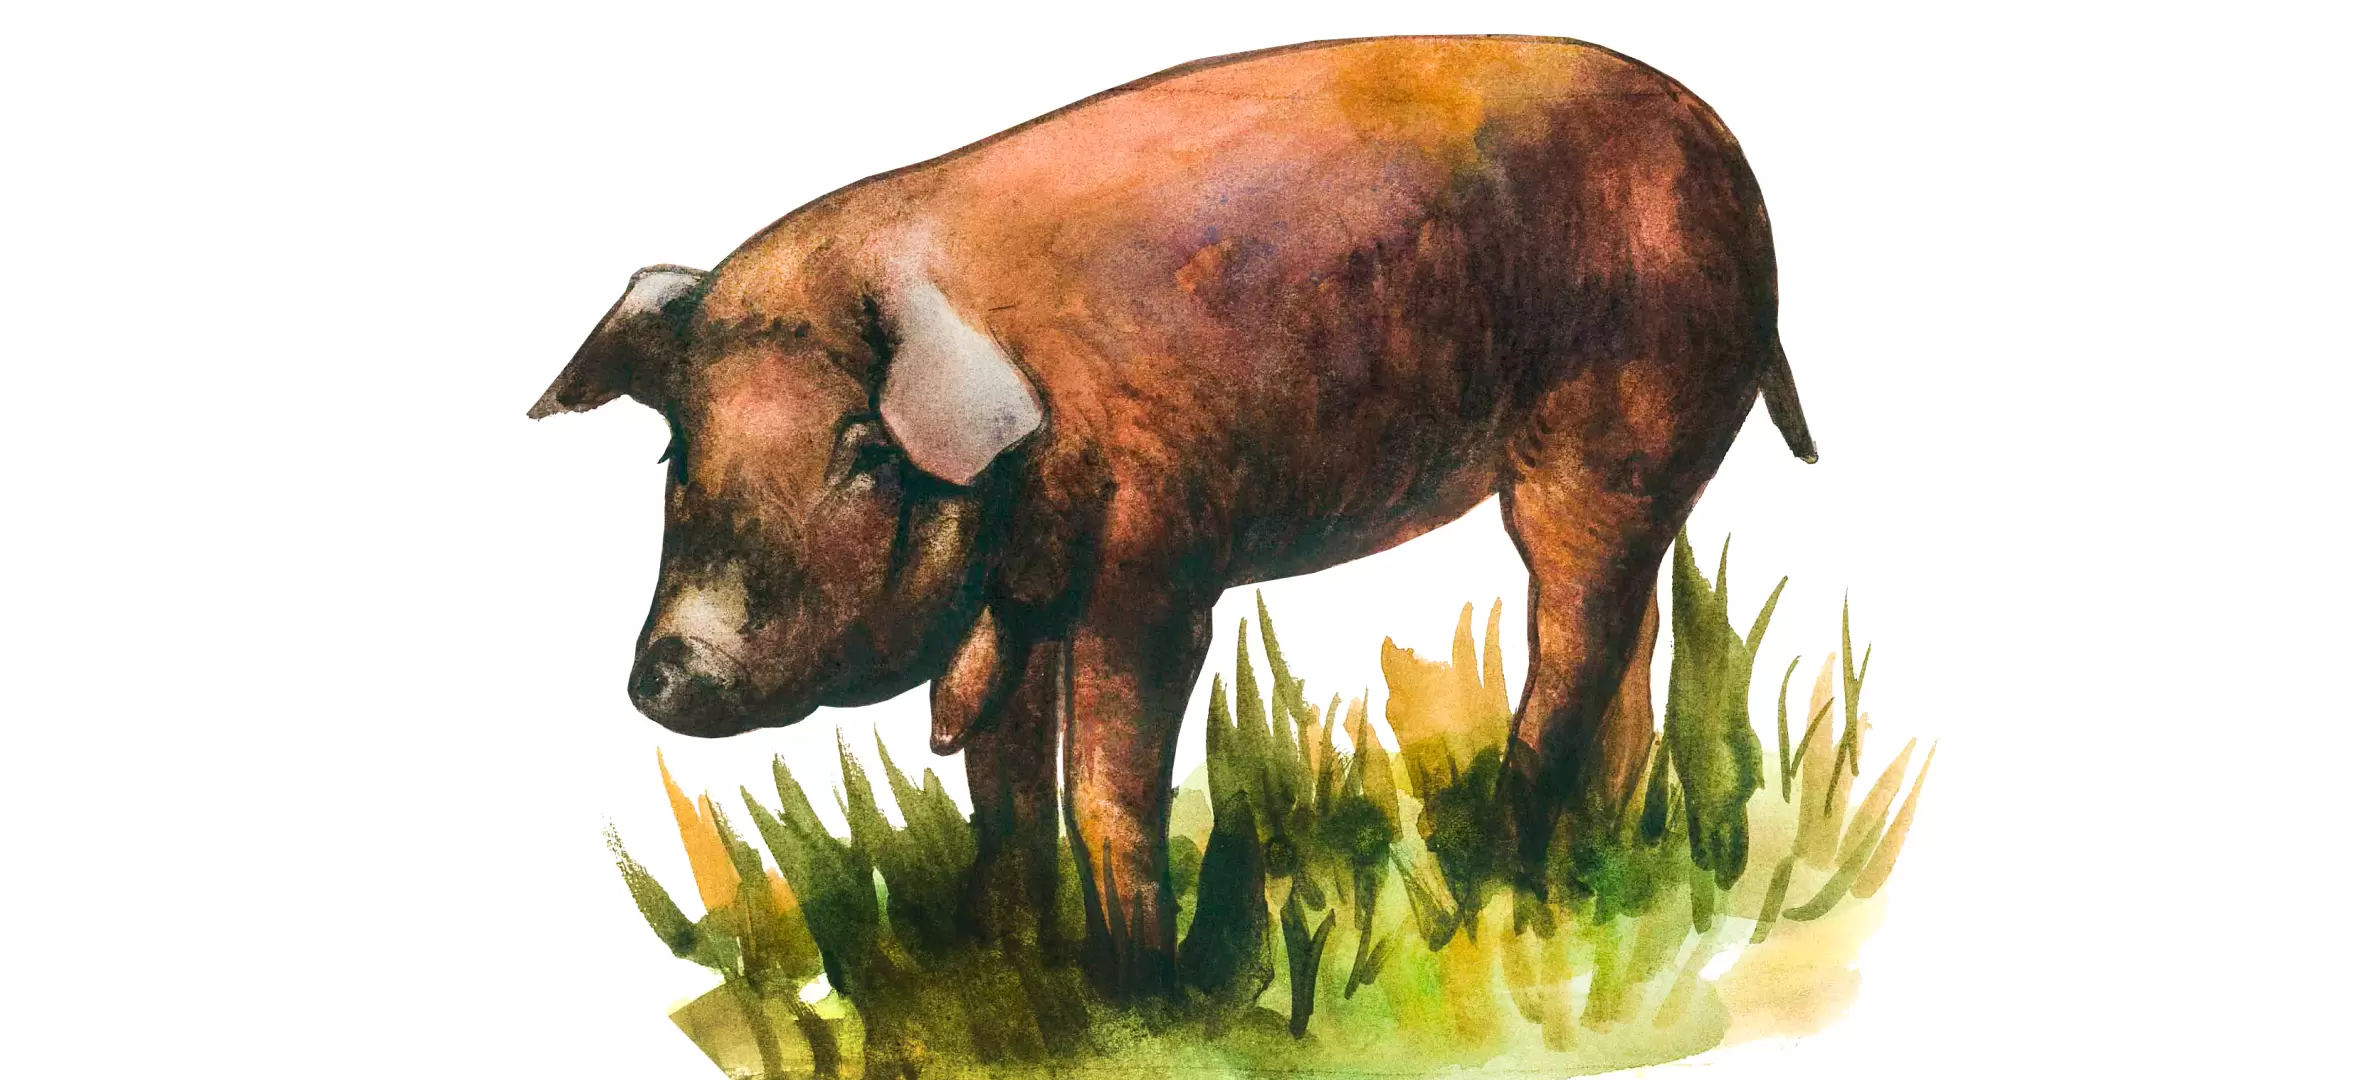 Скороспелая мясная (СМ 1): описание породы свиней, характеристики, продуктивность, особенности содержания и разведения, отзывы